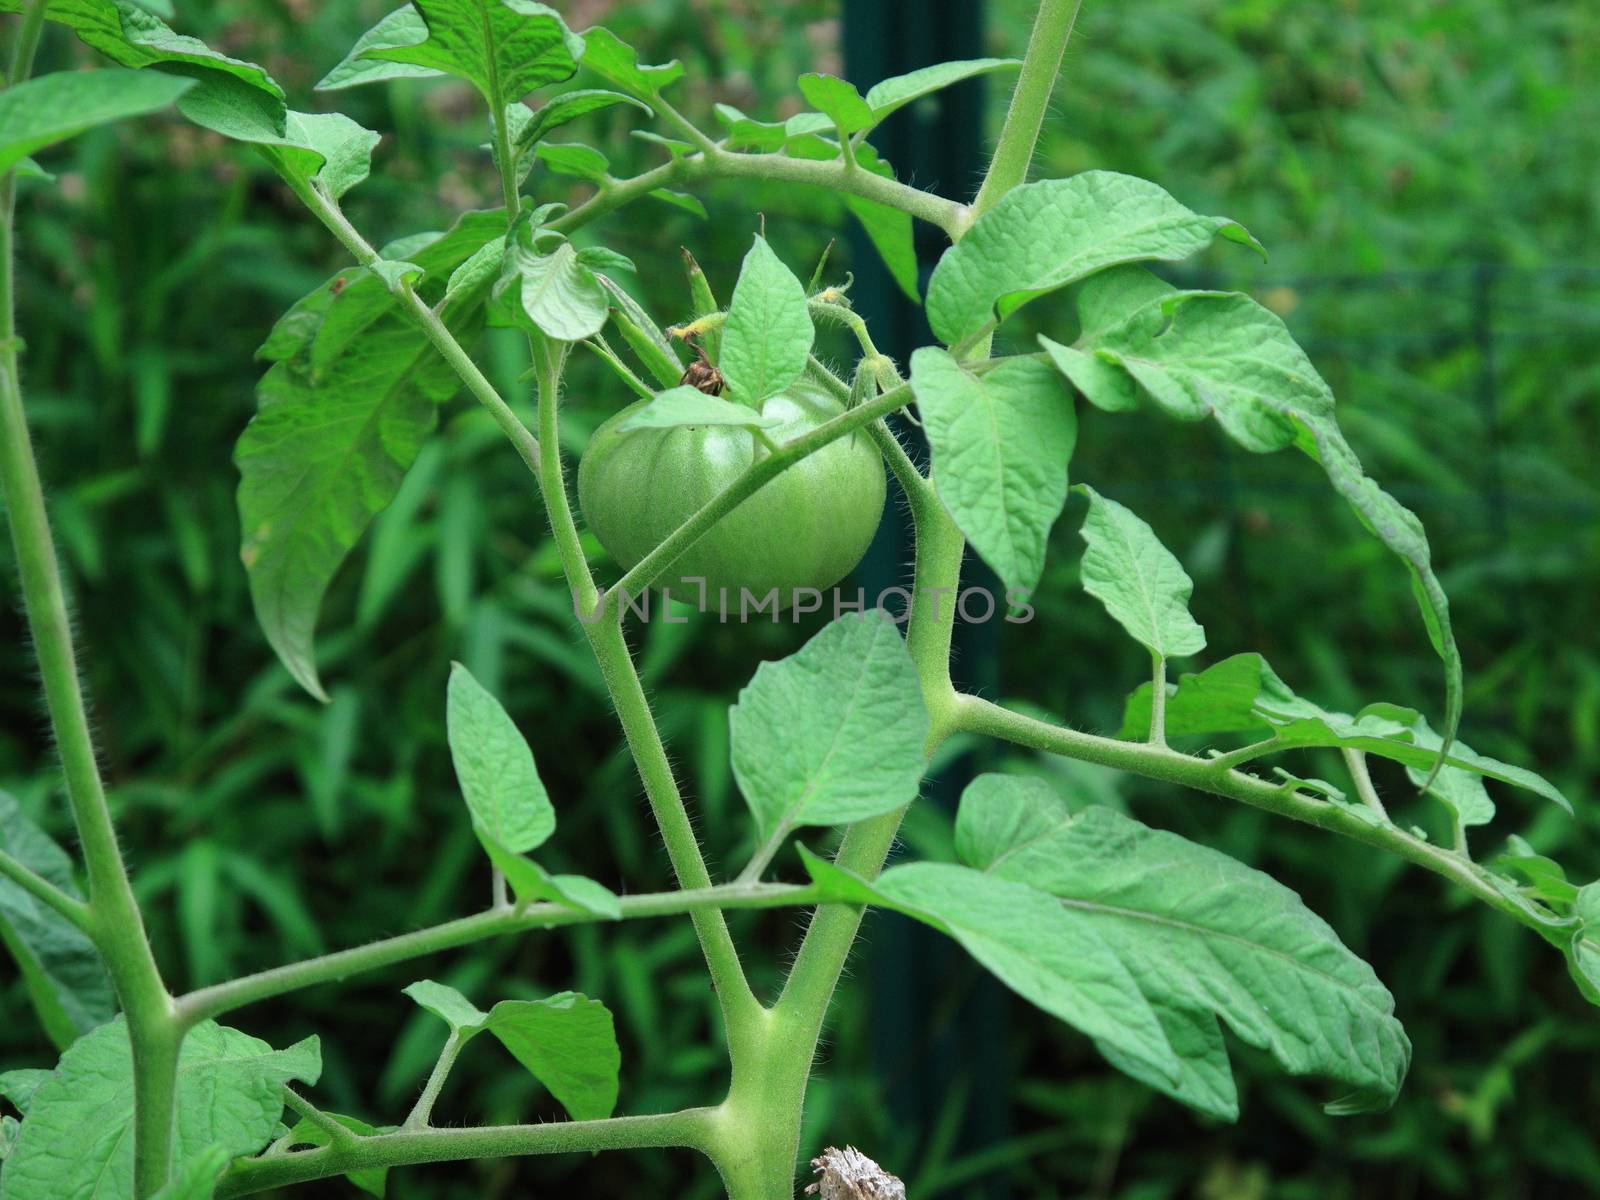 Unripe tomato plants in a garden.